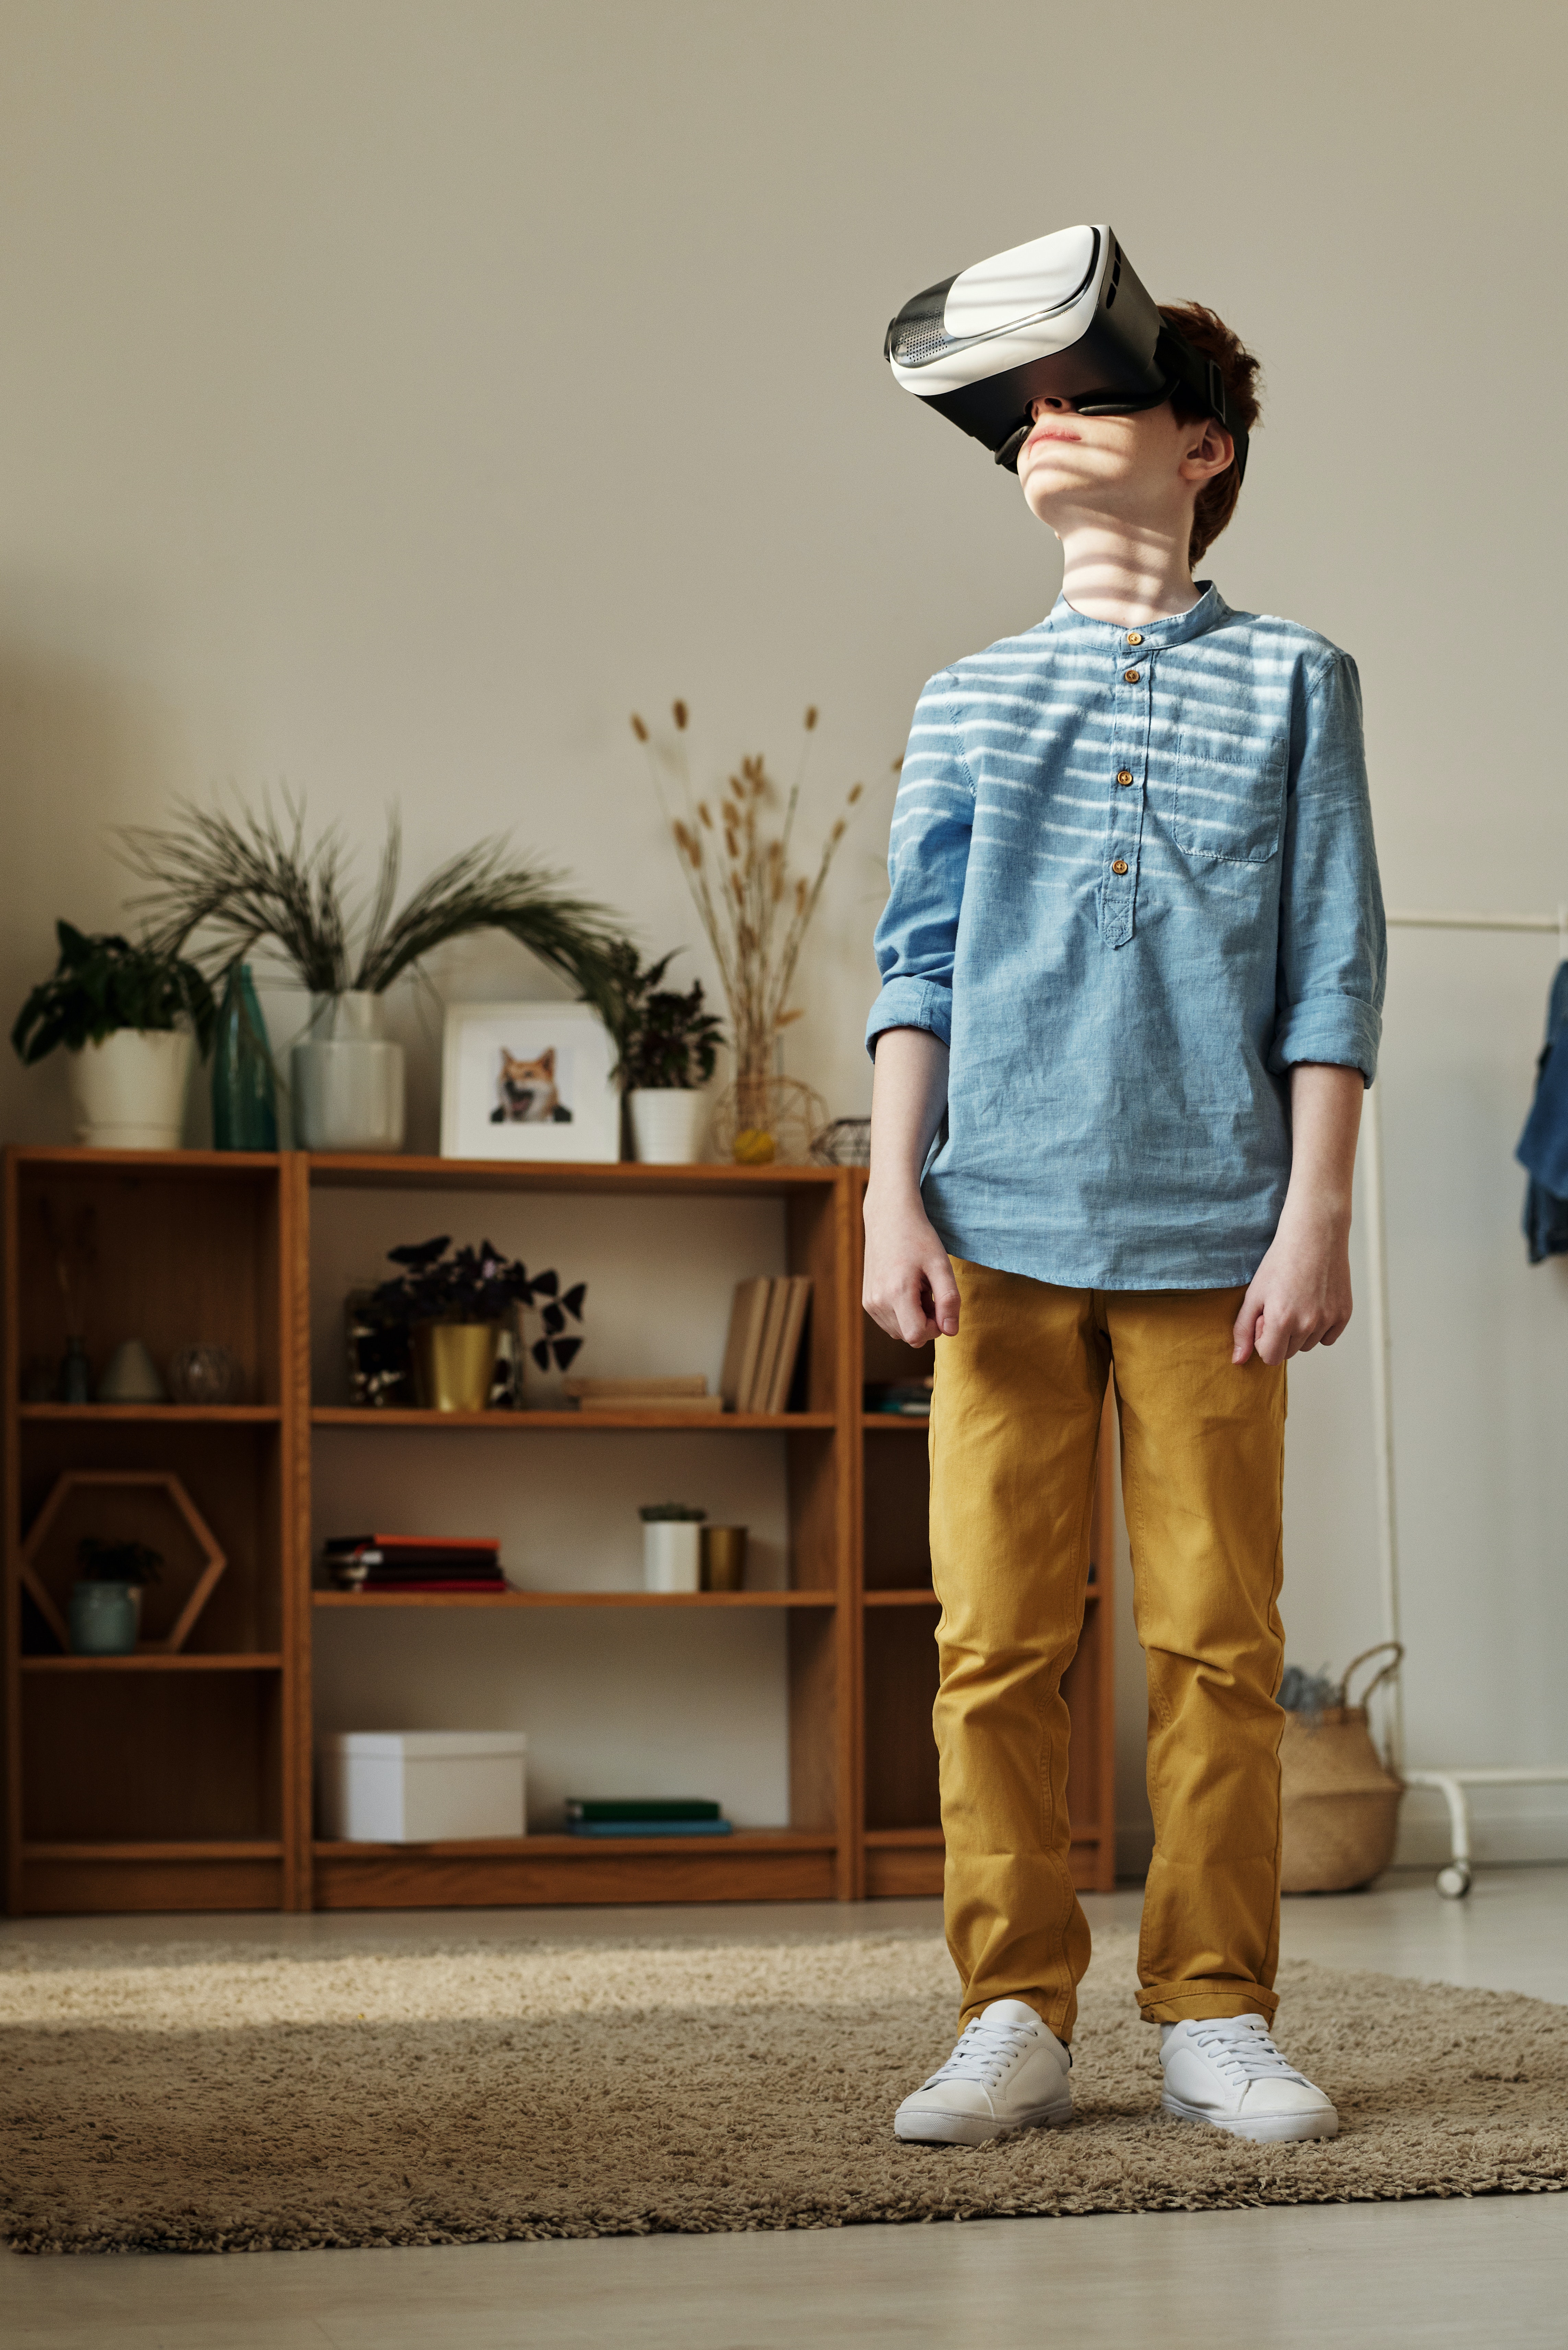 Jeune garçon avec un casque de réalité virtuelle